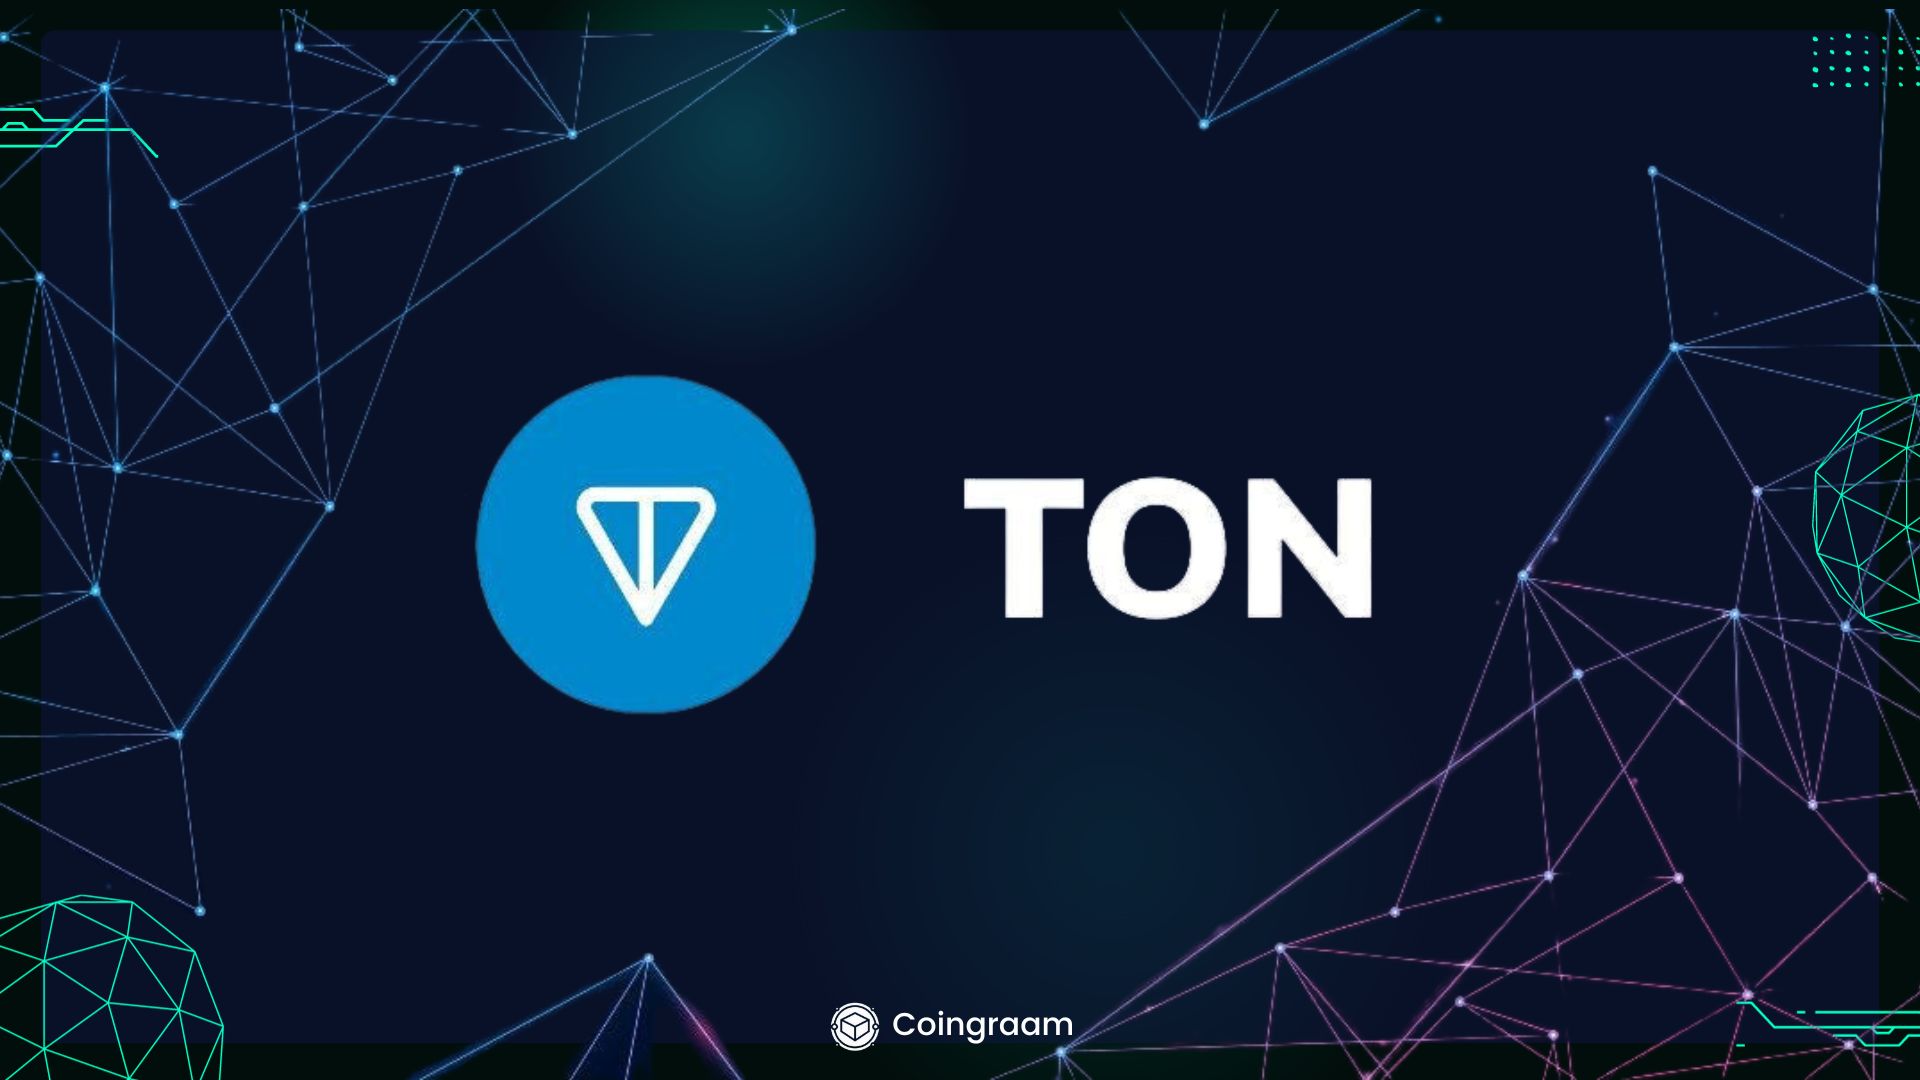 تلگرام کیف پول ارز دیجیتال خود را برای ۸۰۰ میلیون کاربر فعال کرد؛ رشد ۱۵ درصدی قیمت تون‌کوین